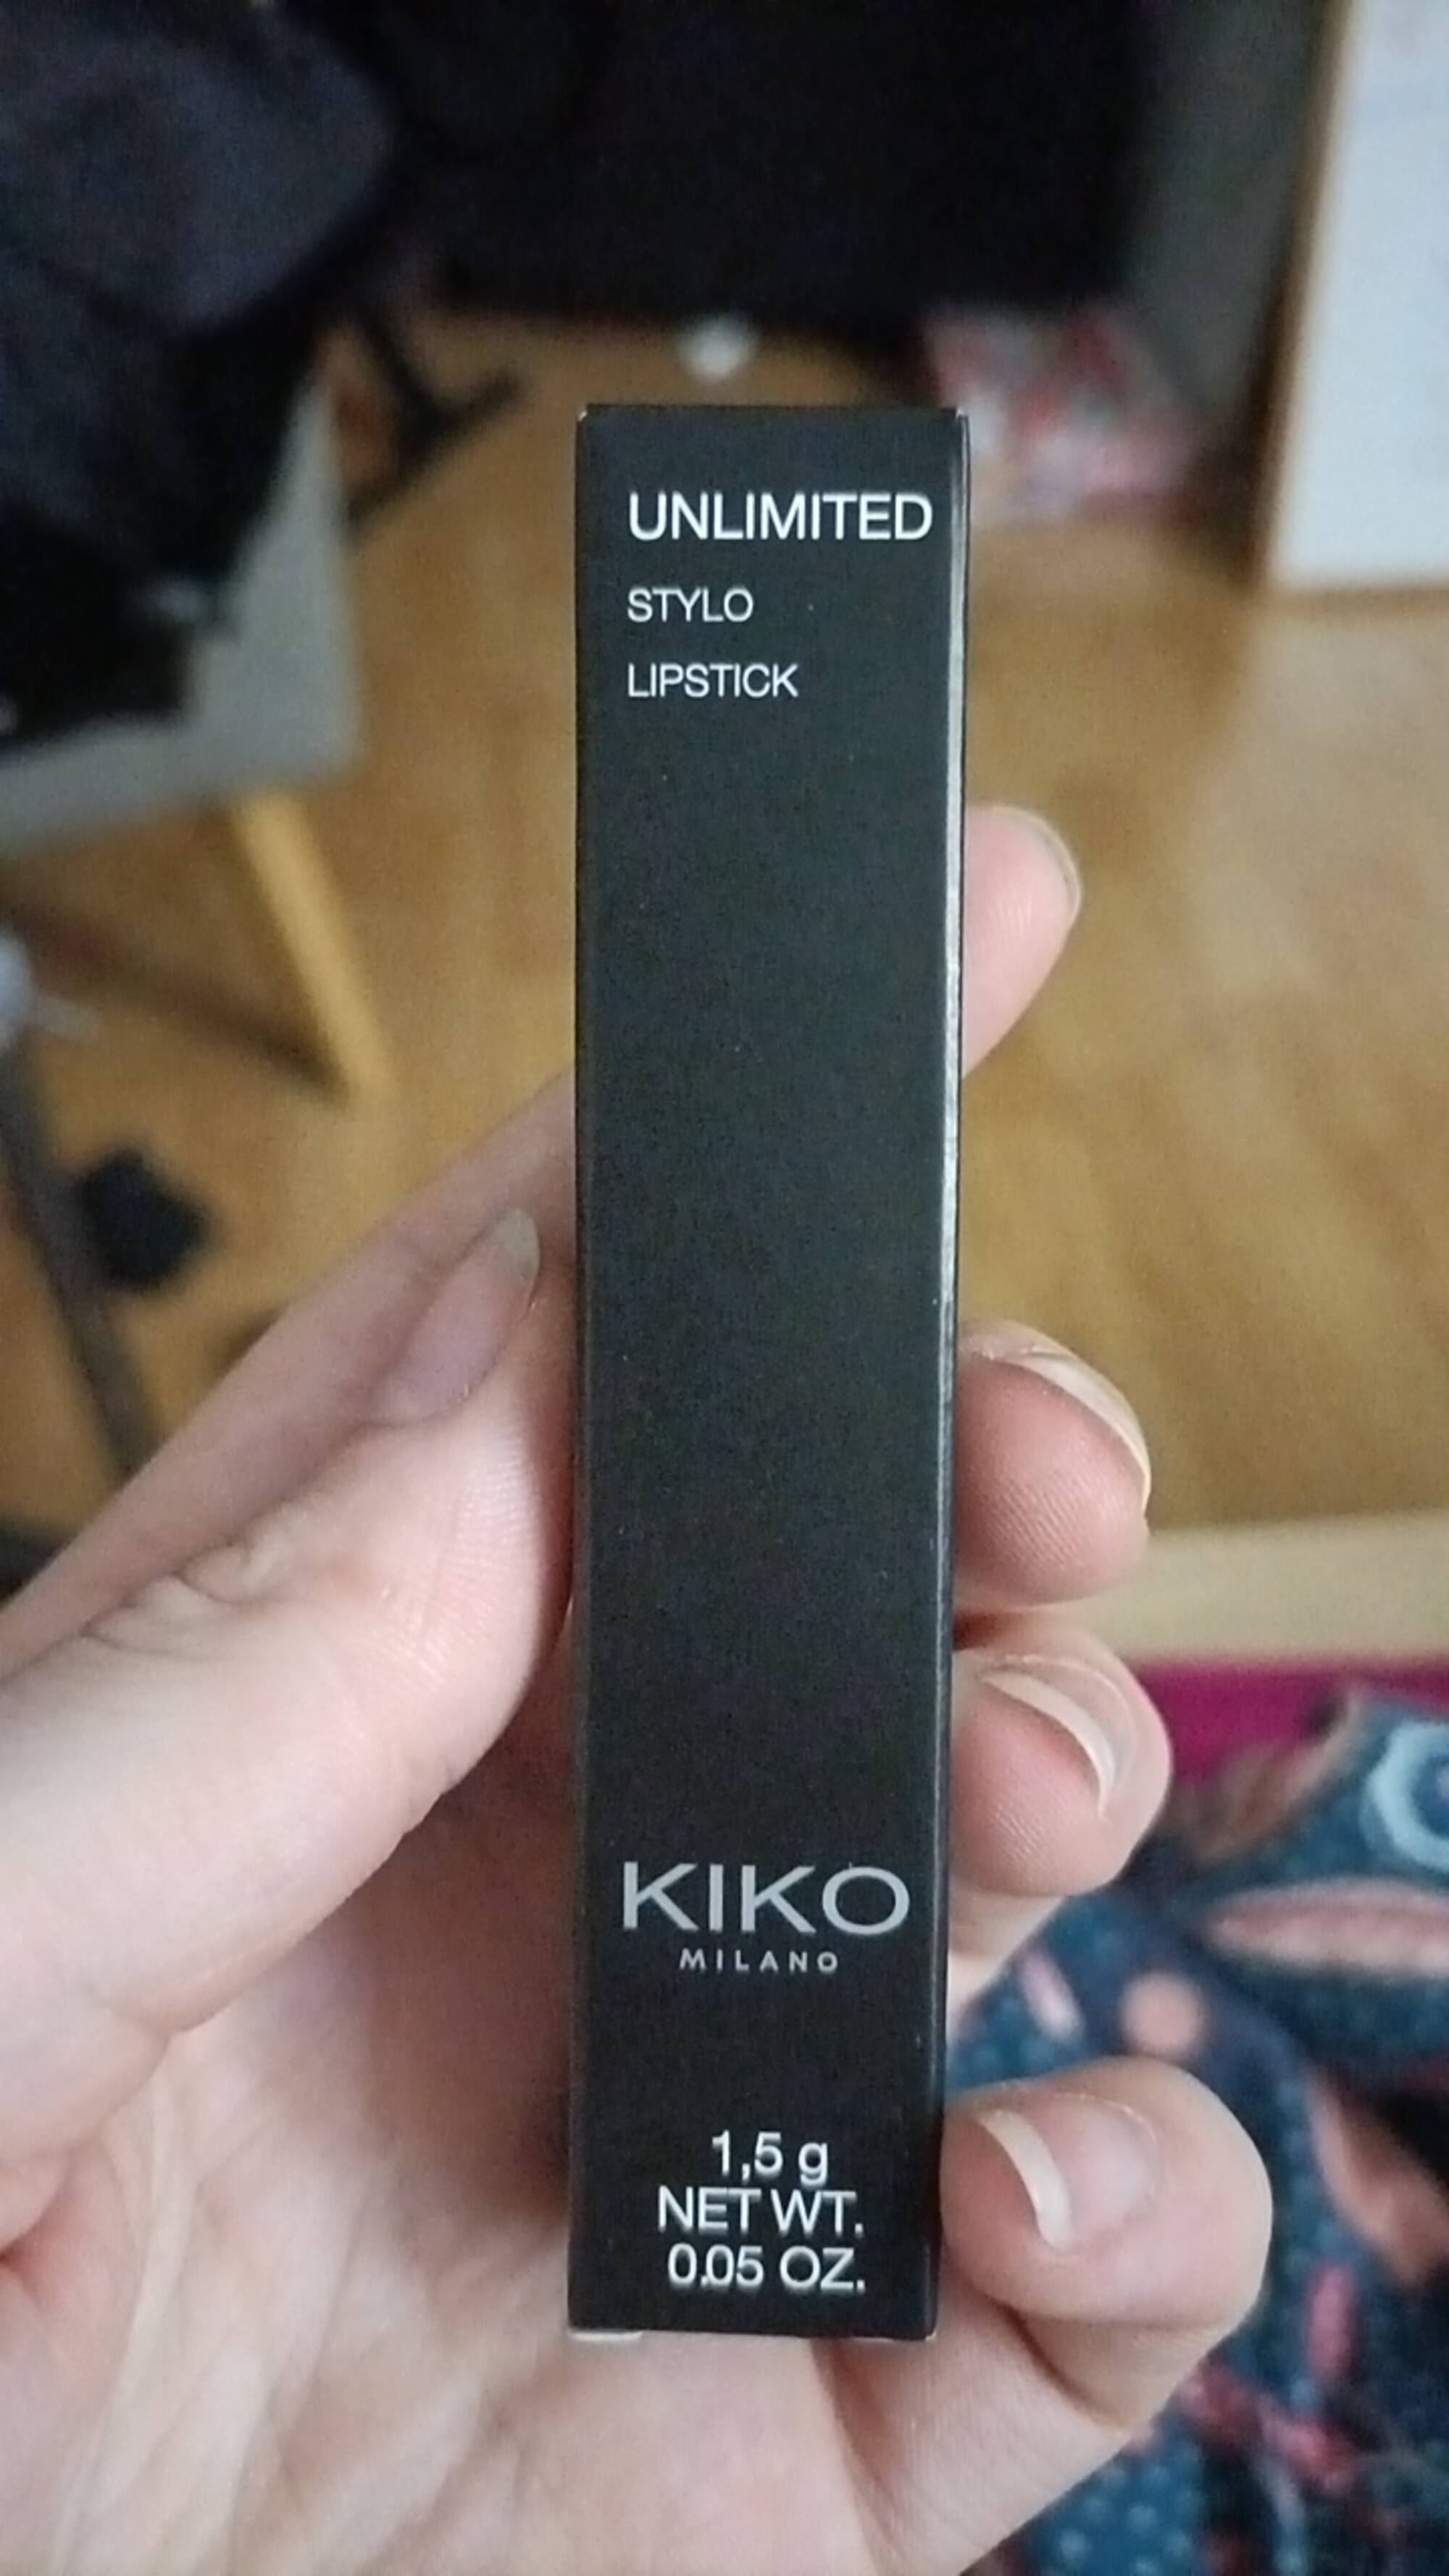 KIKO MILANO - Unlimited - Stylo lipstick